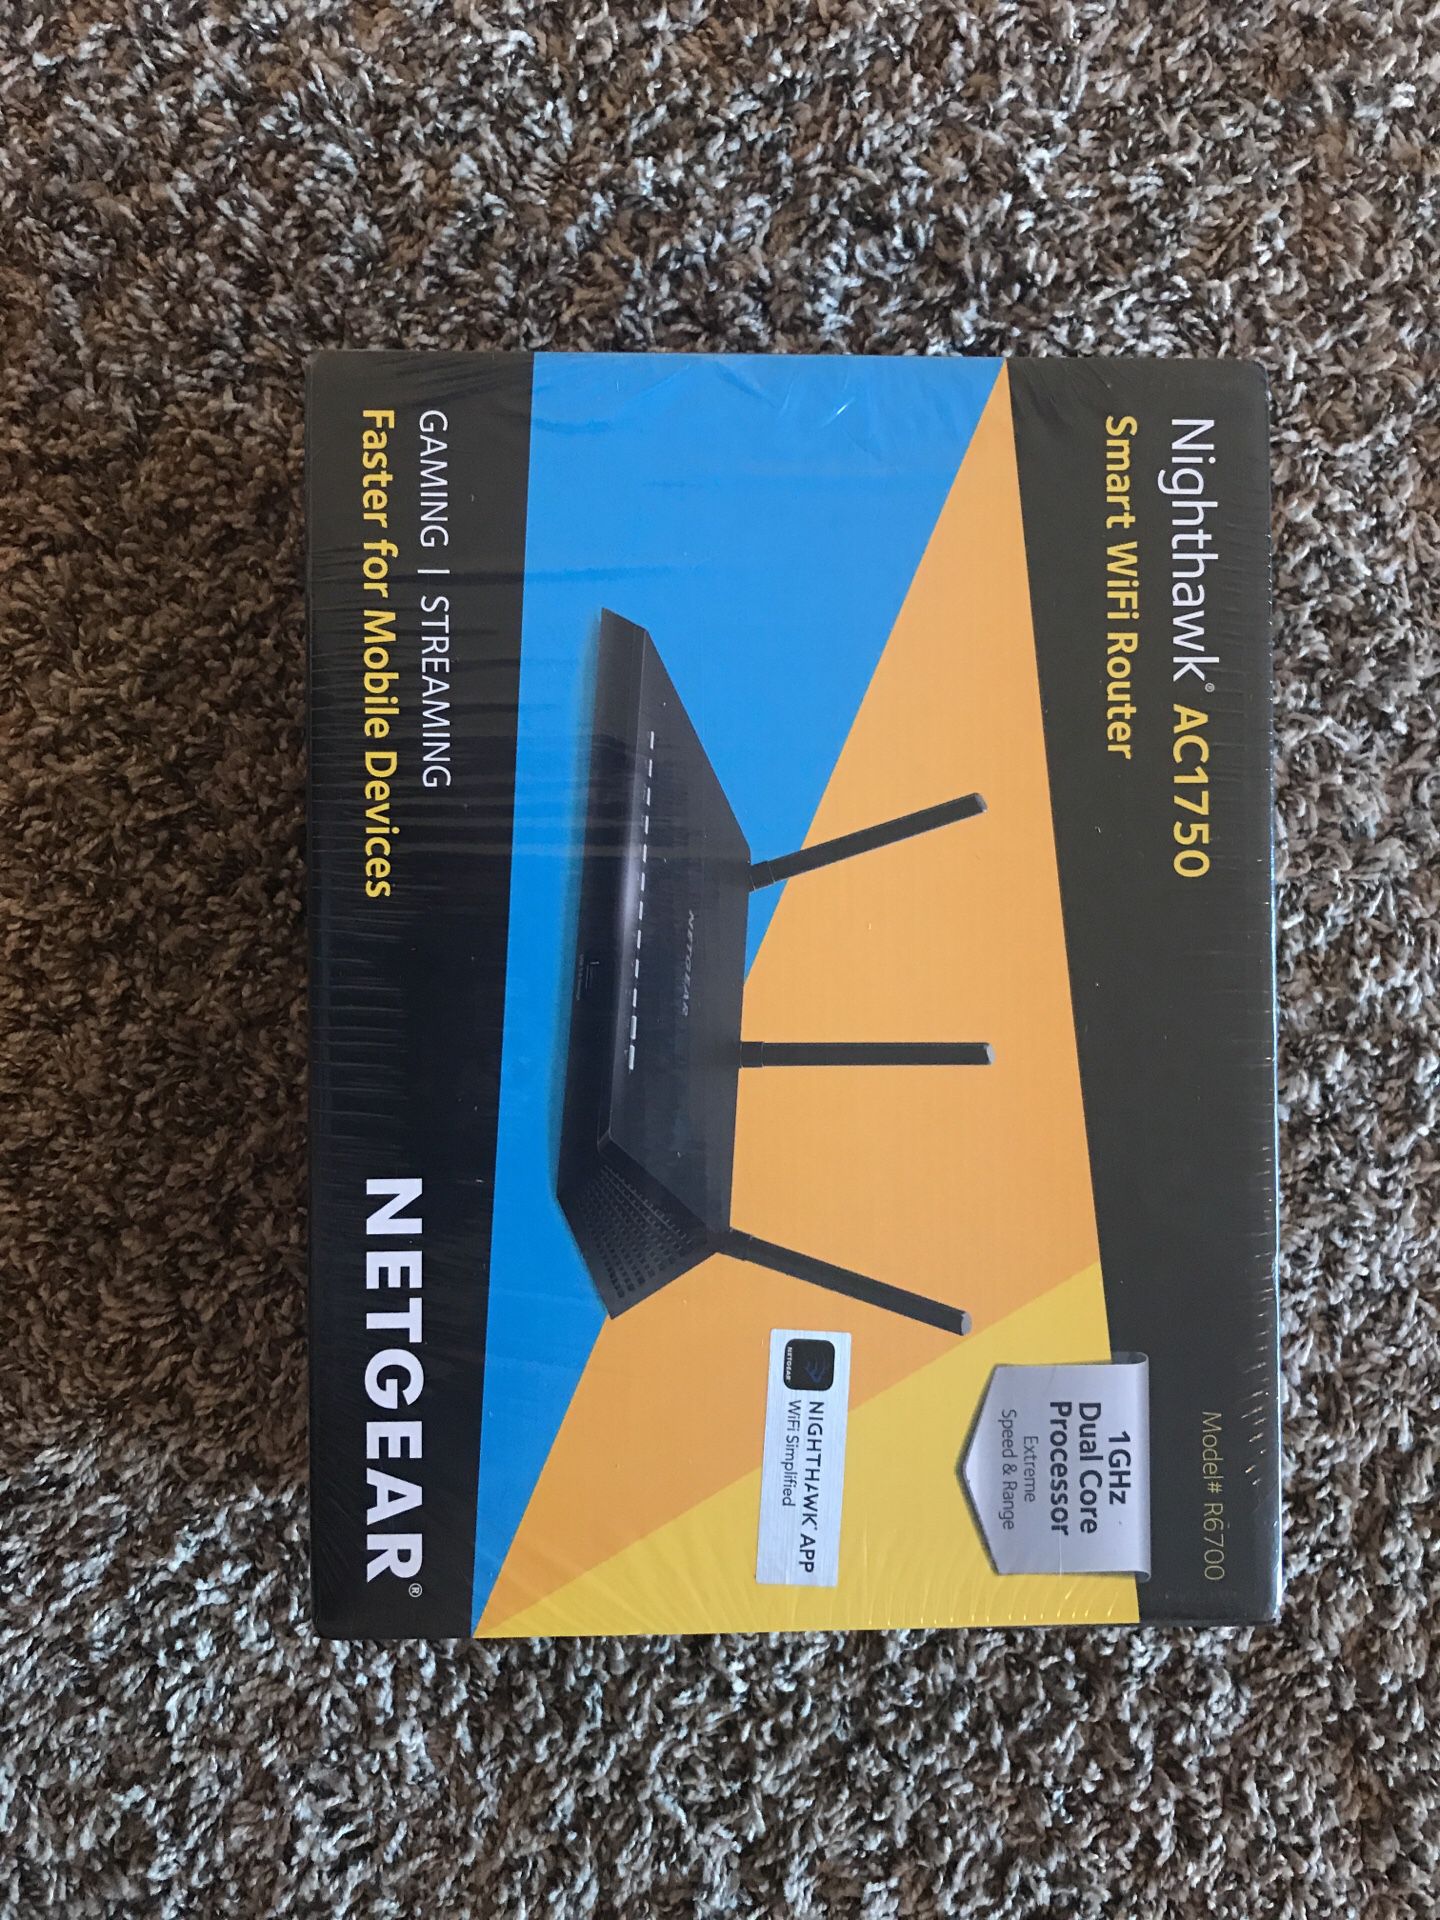 Netgear nighthawk smart wifi router